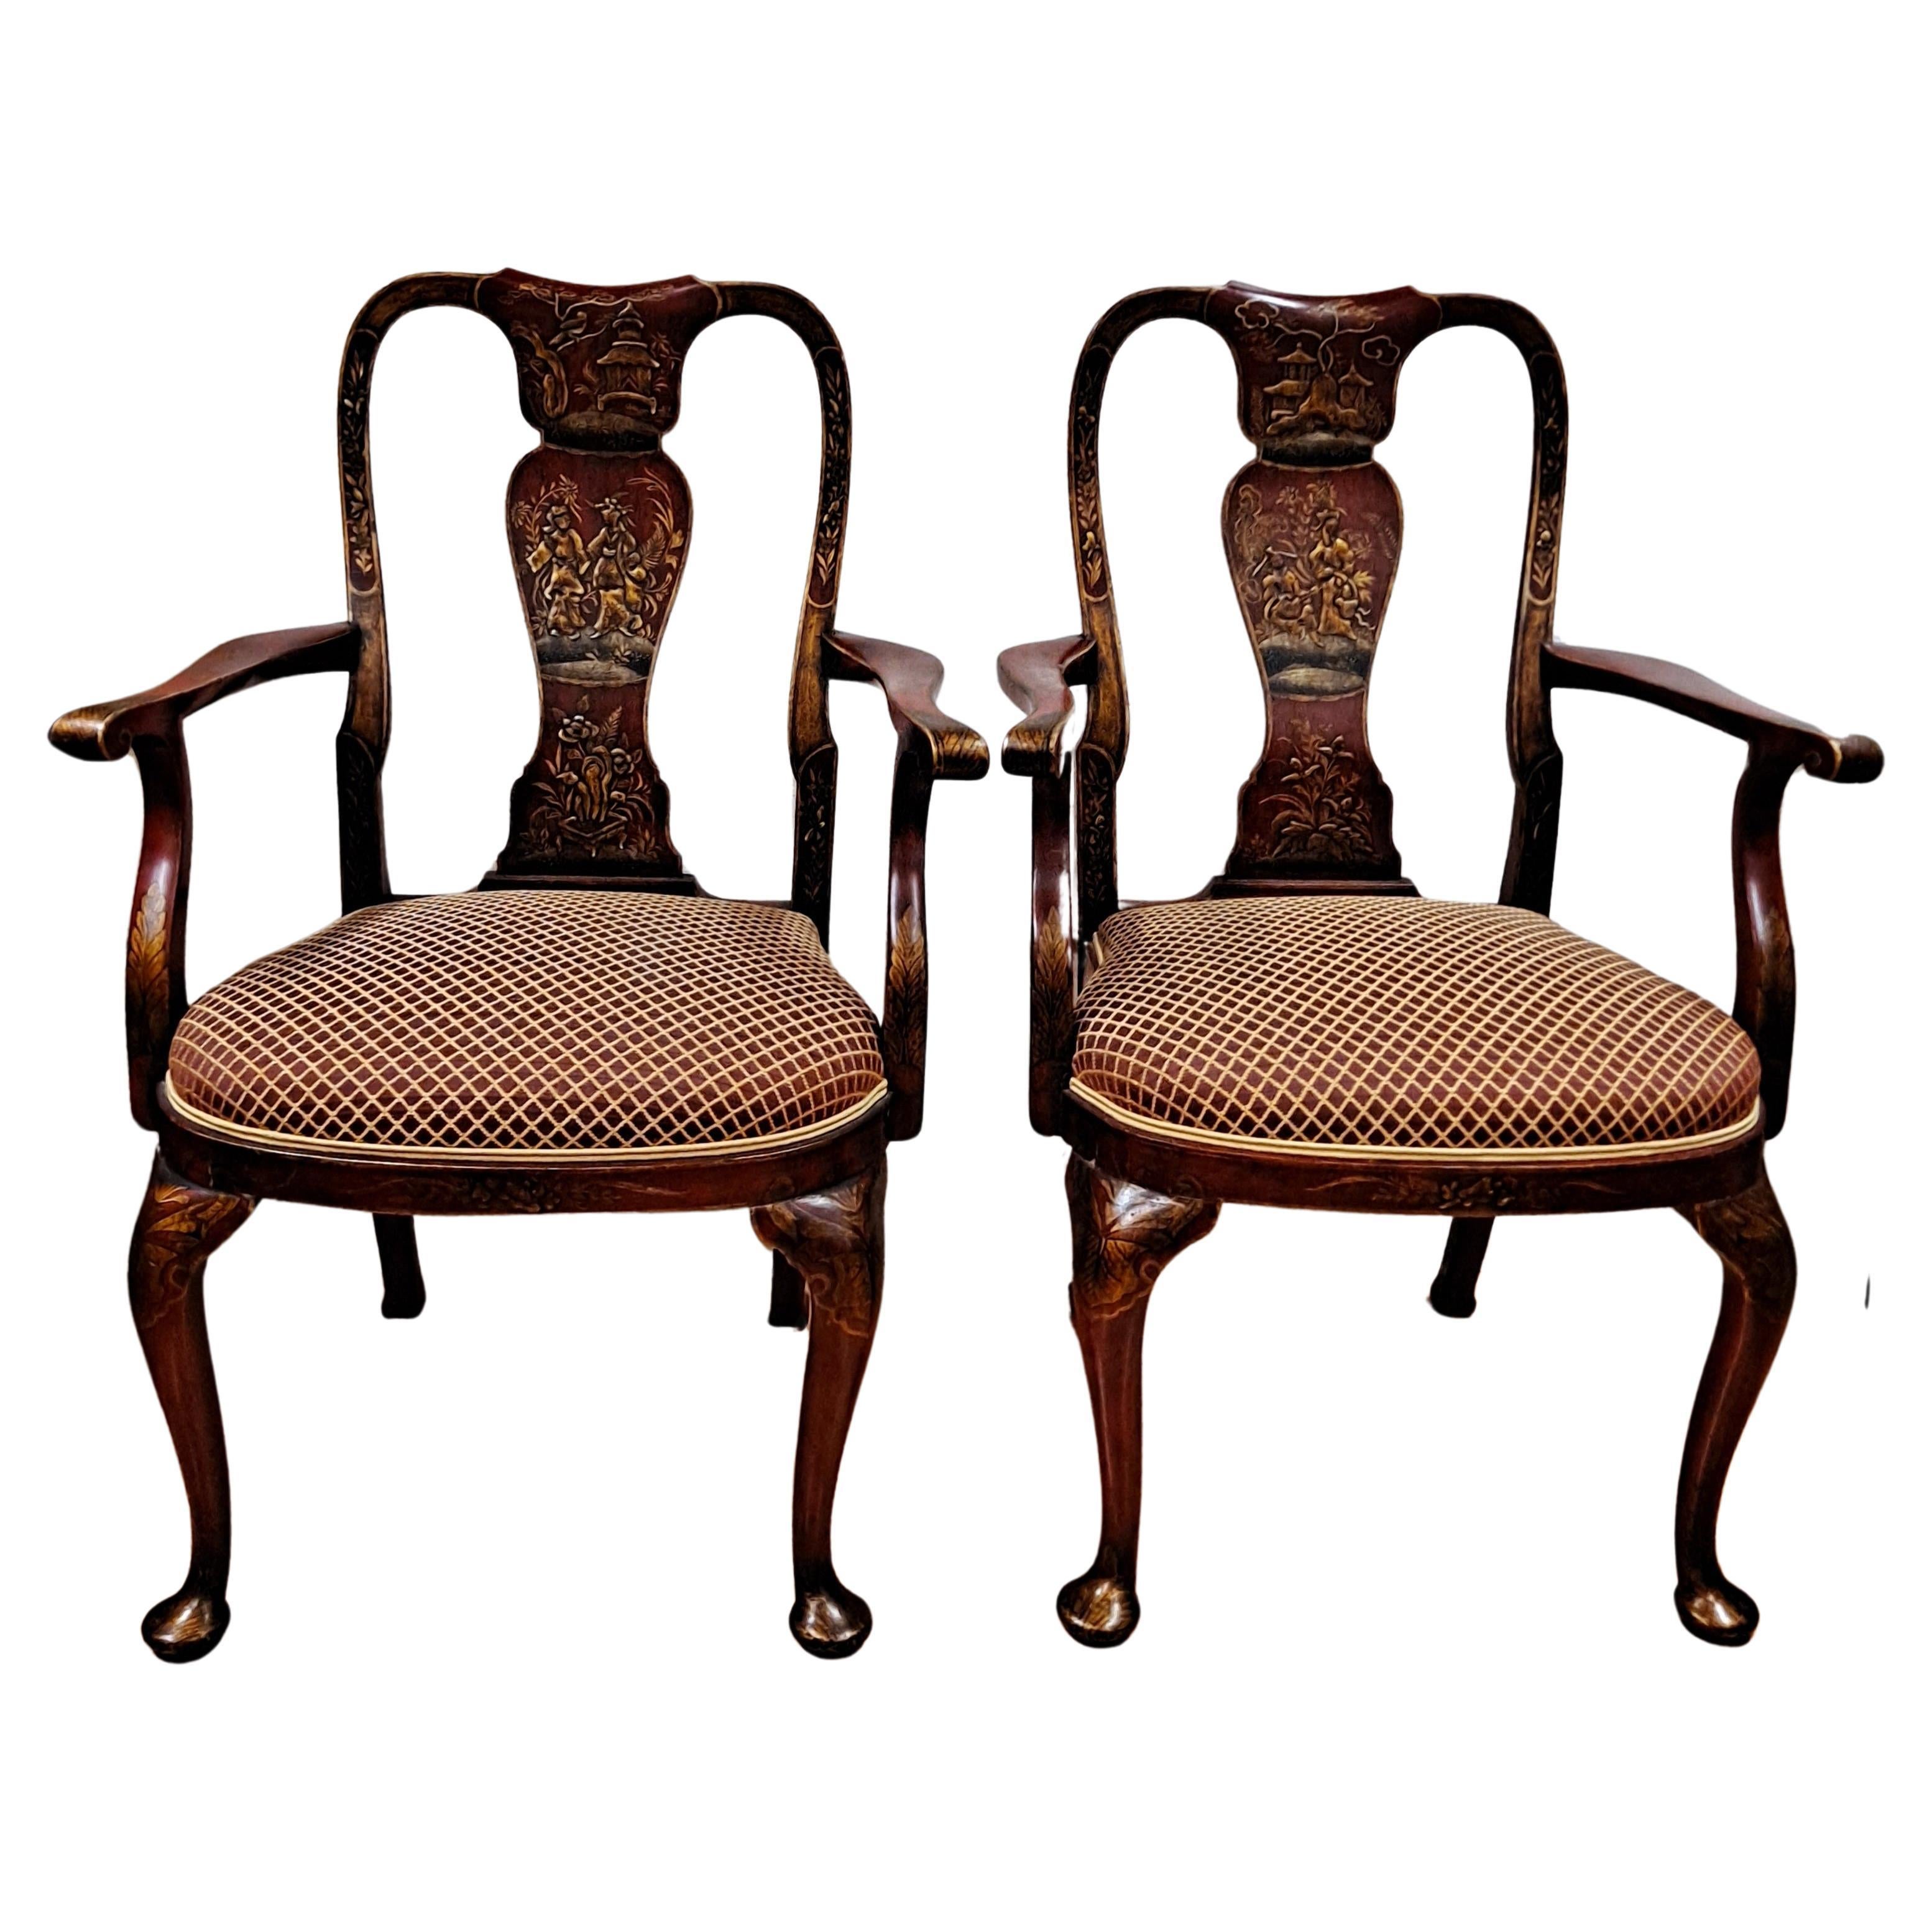 Paar Chinoiserie-Sessel im Queen Anne-Stil, bemalt, mit gepolsterten Sitzen